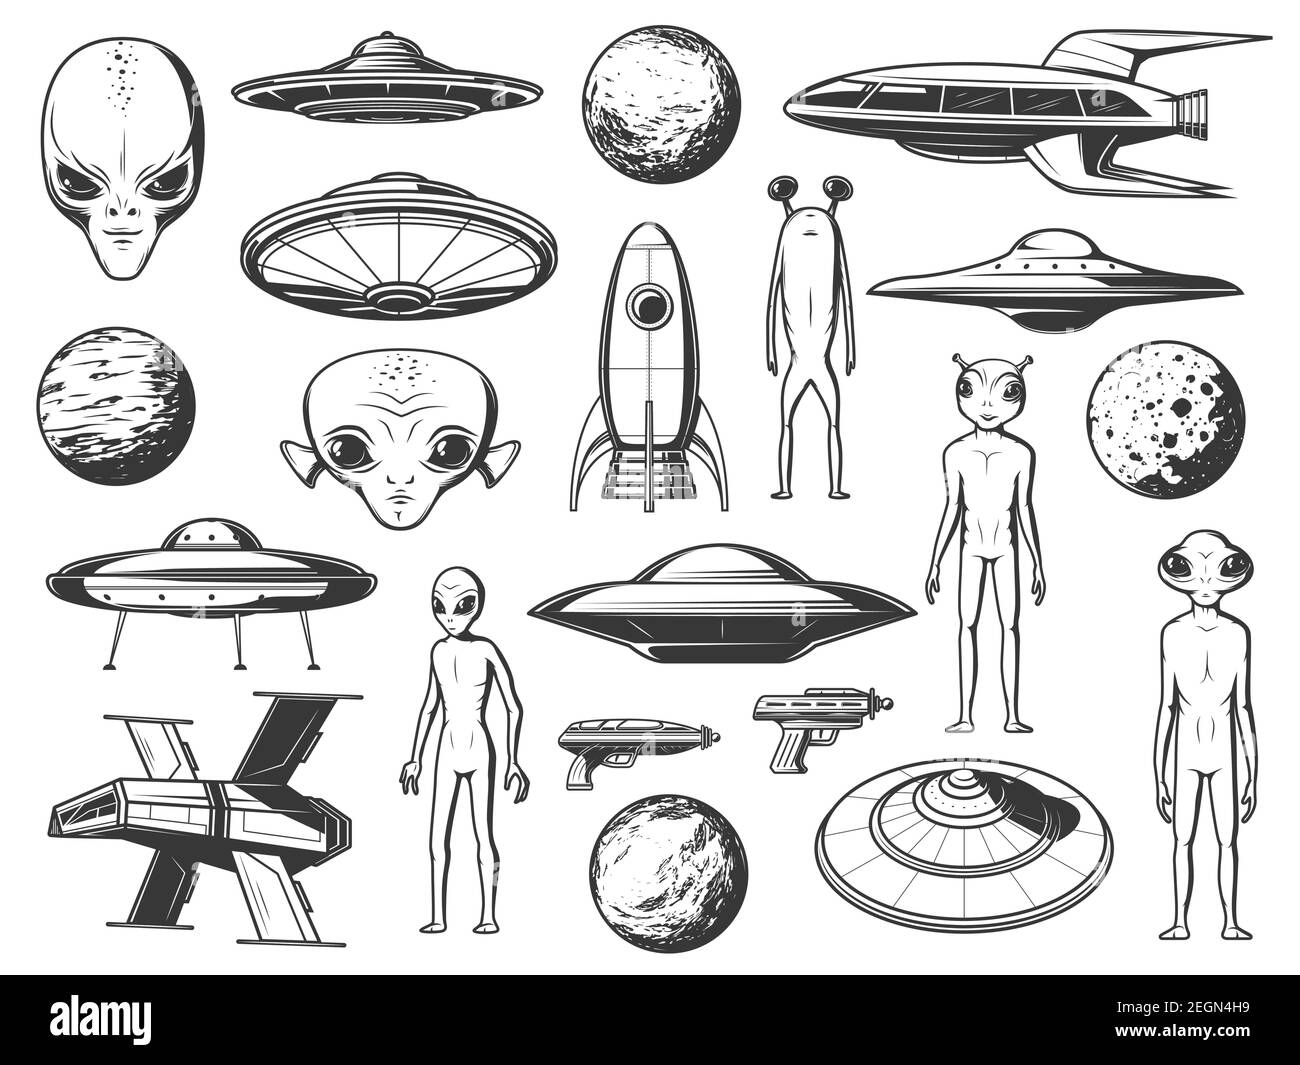 Aliens, außerirdische Raumschiffe und Planeten gravierte Symbole gesetzt. Alien Lebensformen, humanoide Kreaturen mit großem Kopf und Augen, fantastische Raumschiffe, Stock Vektor